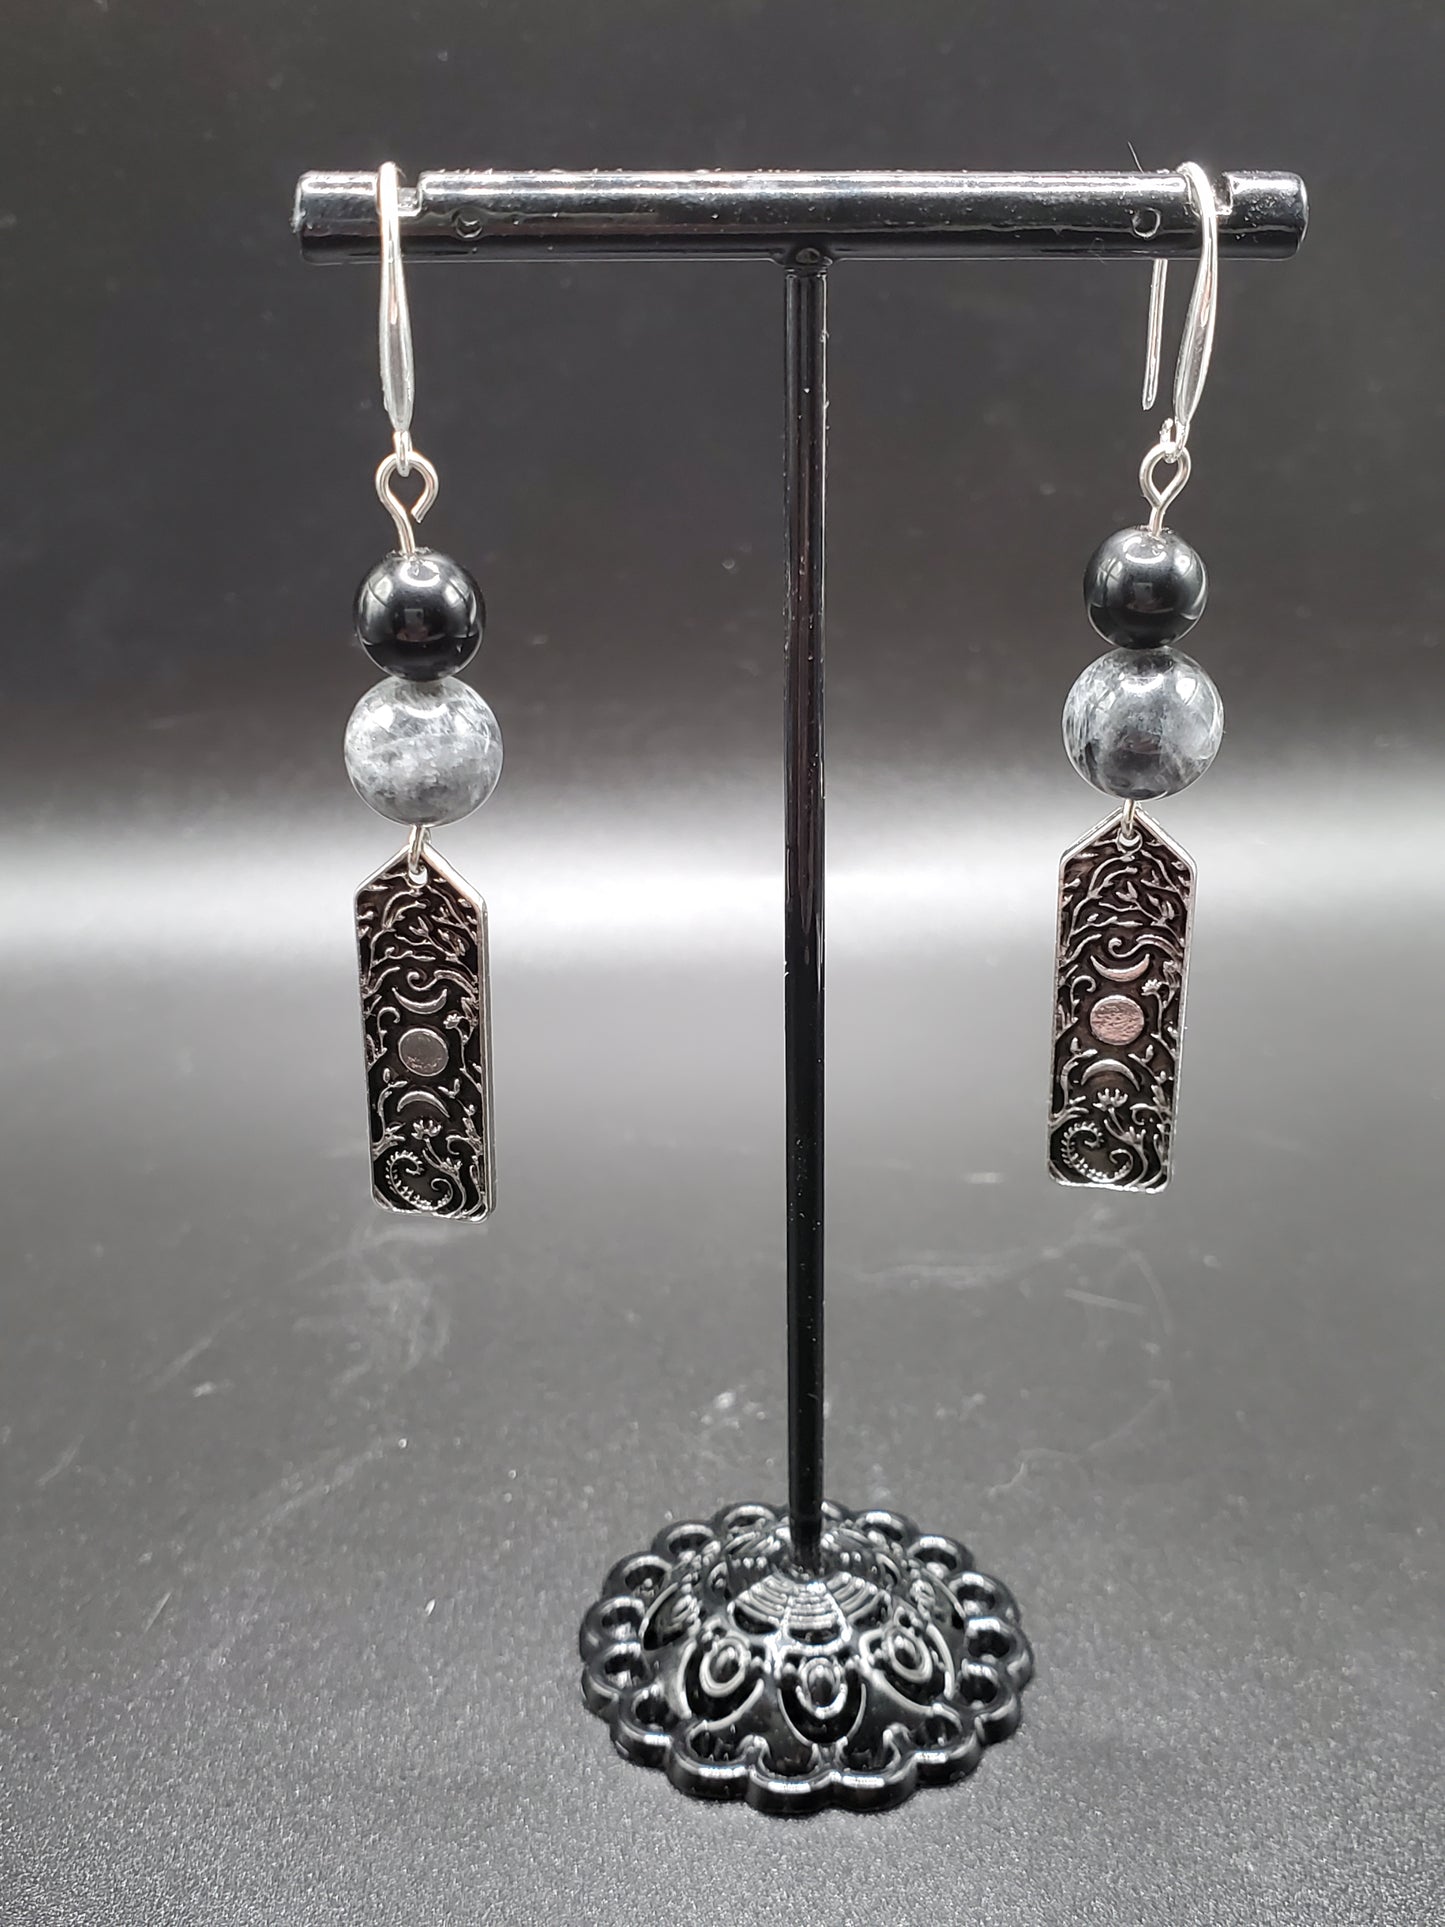 Dream Labradorite & Ranbow Obsidian Moon Vine Dangle Earrings W Sterling Silver French Earwires